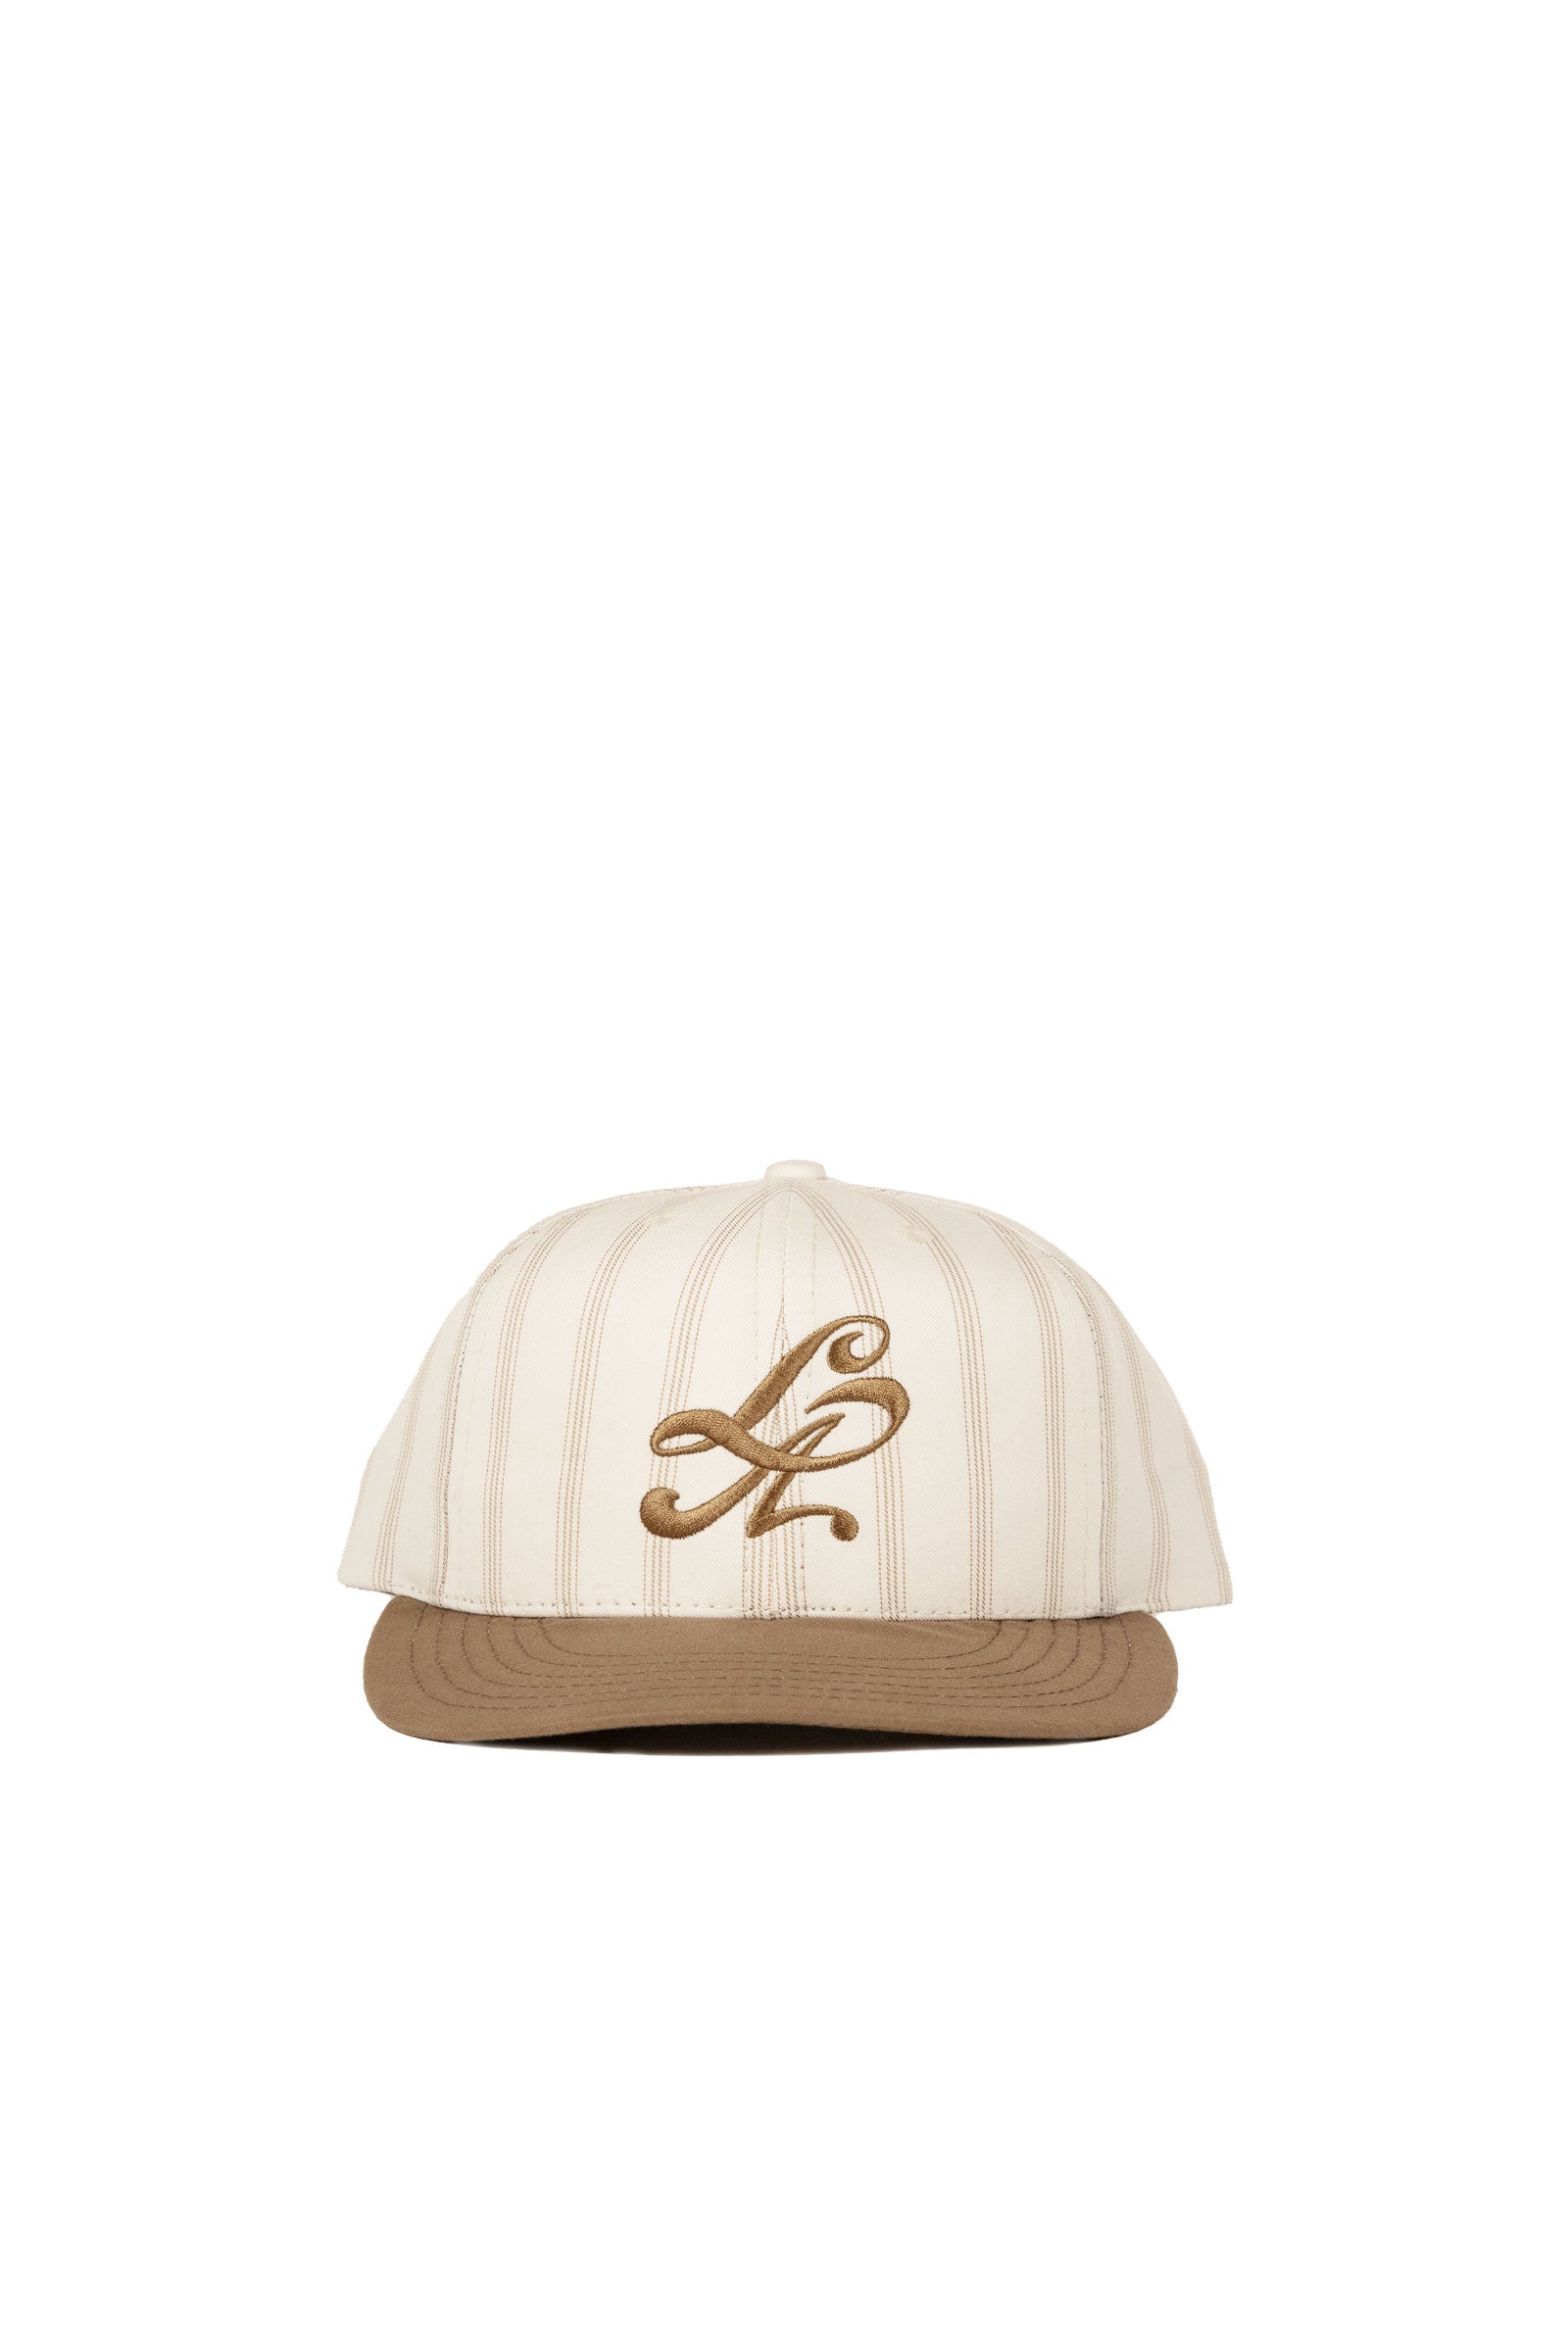 Lite Year LA Baseball Cap - Creme/Khaki